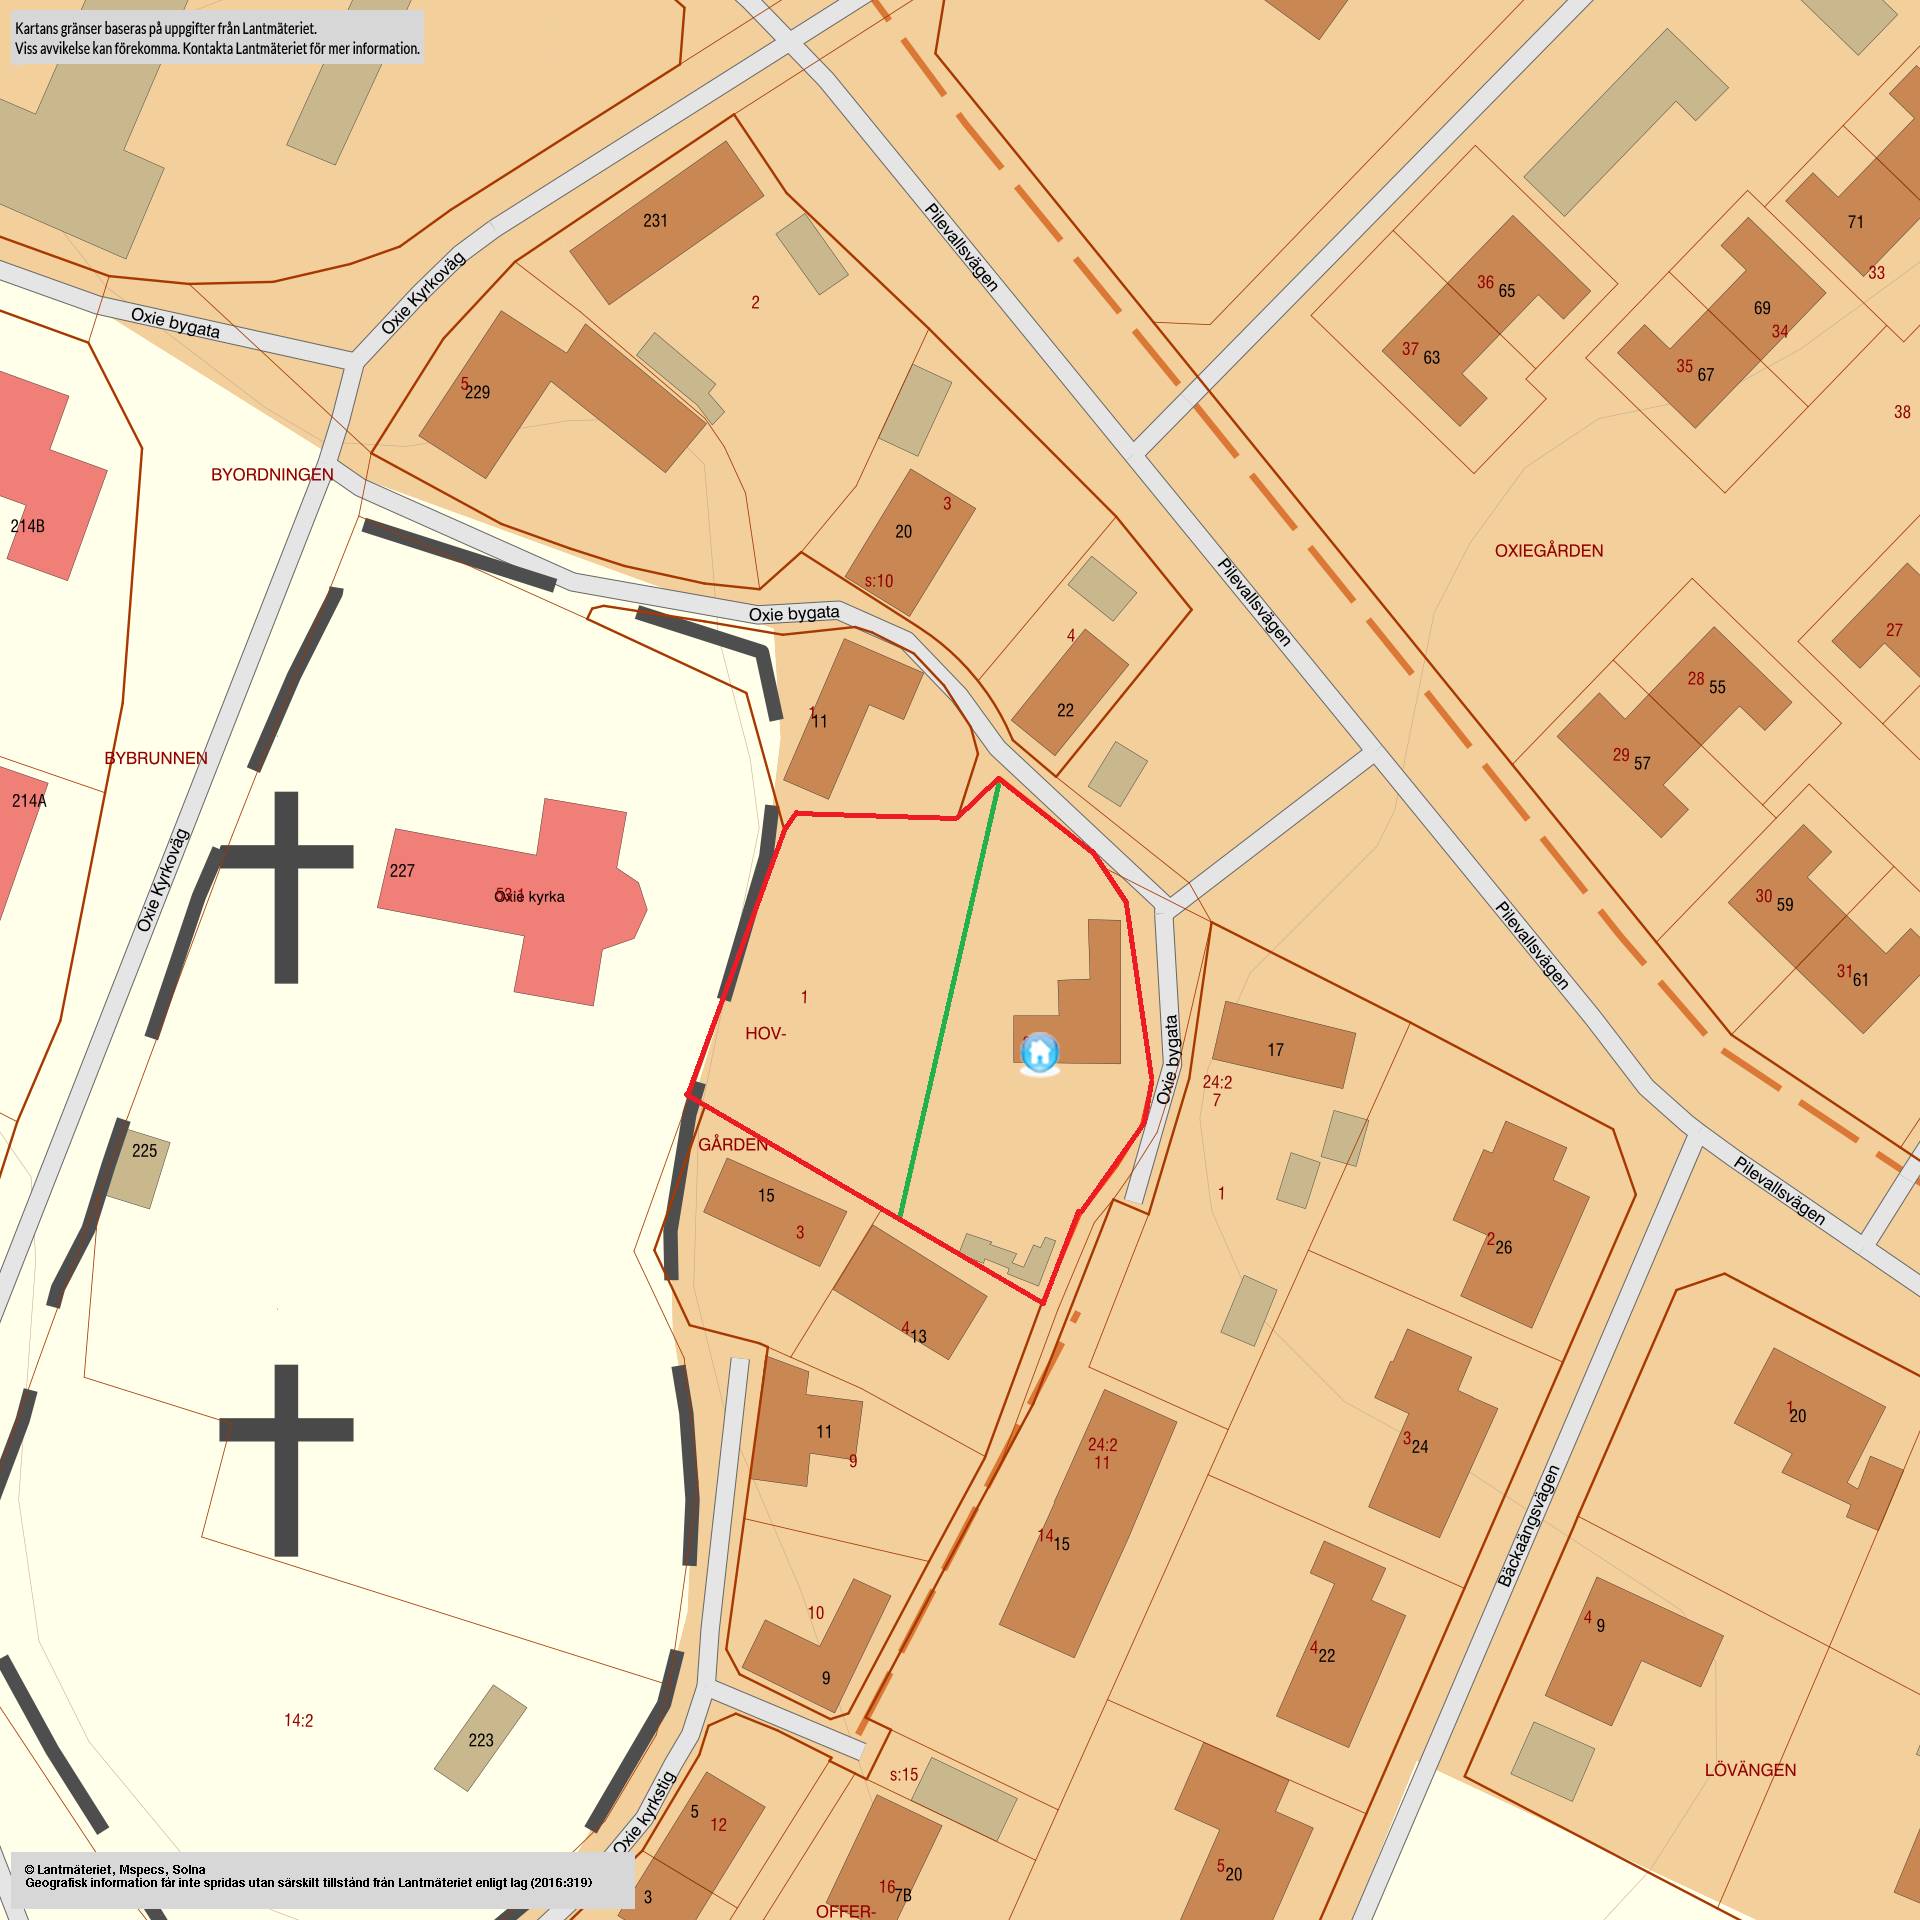 Köpet avser de två samtaxerade, större tomerna öster om kyrkan. Yttre gränsen är markerad med rött och gränsen mellan de två tomerna är markerad i grönt.